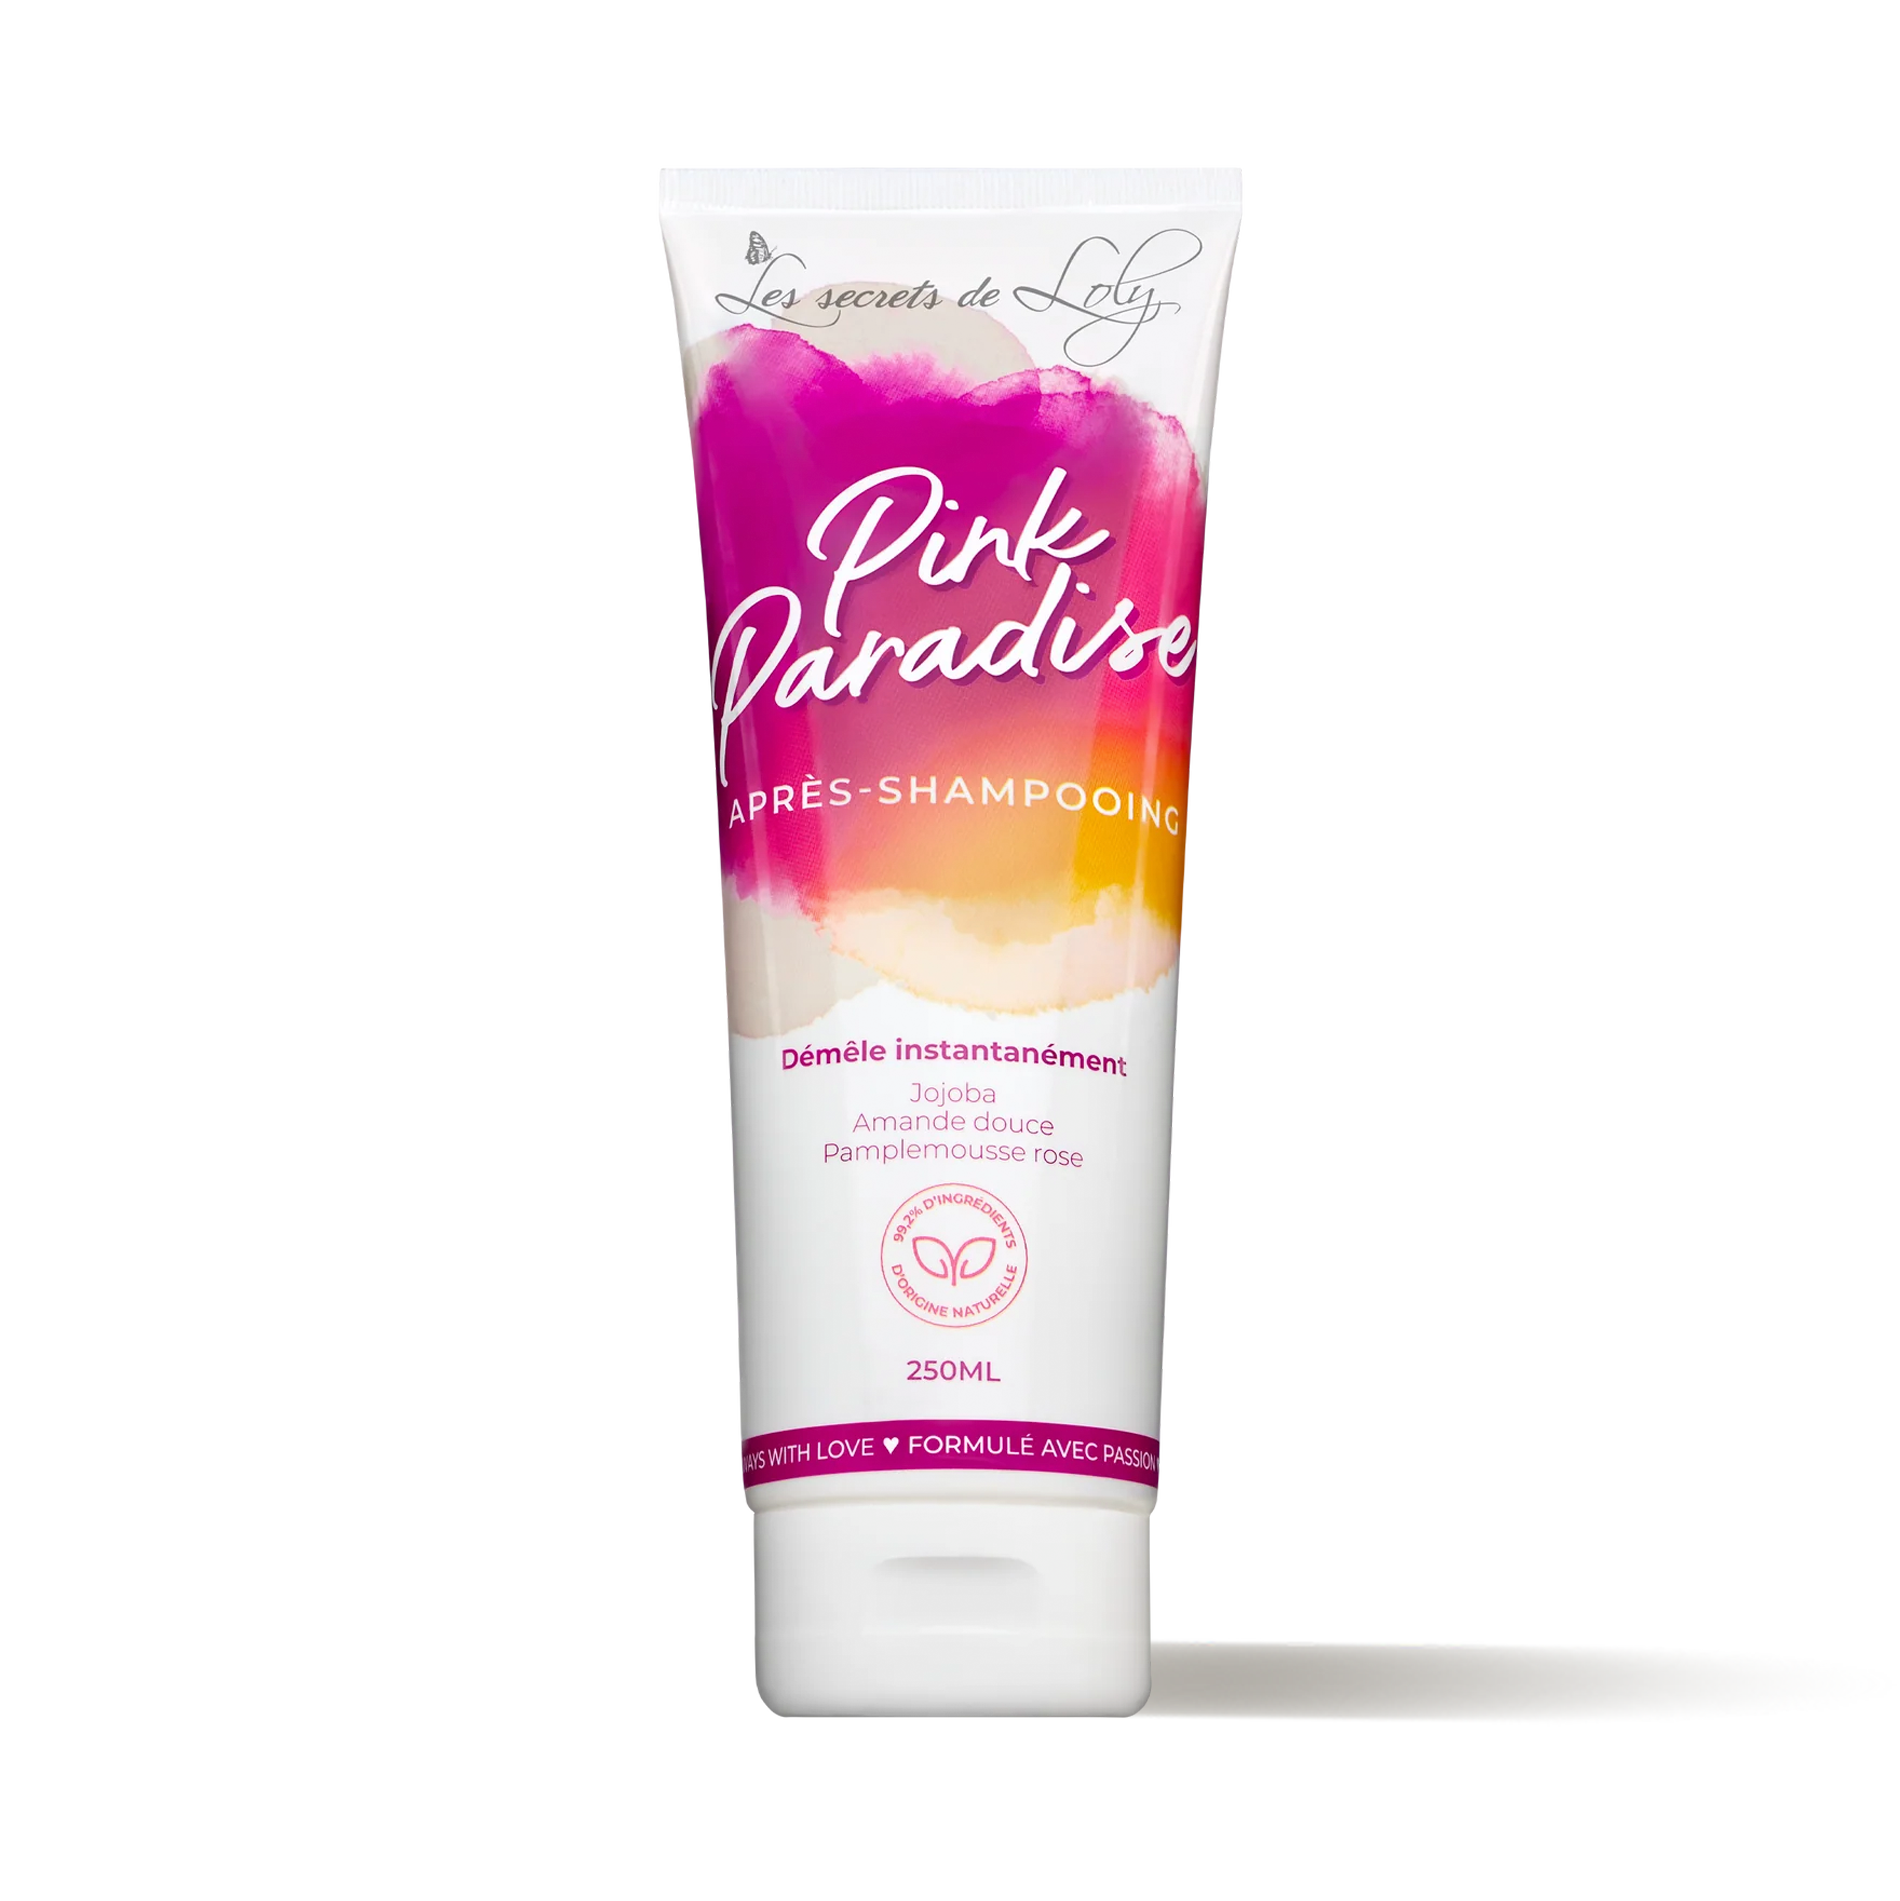 Pink Paradise - Les Secrets de Loly - Après-shampoings - Tuccinardi